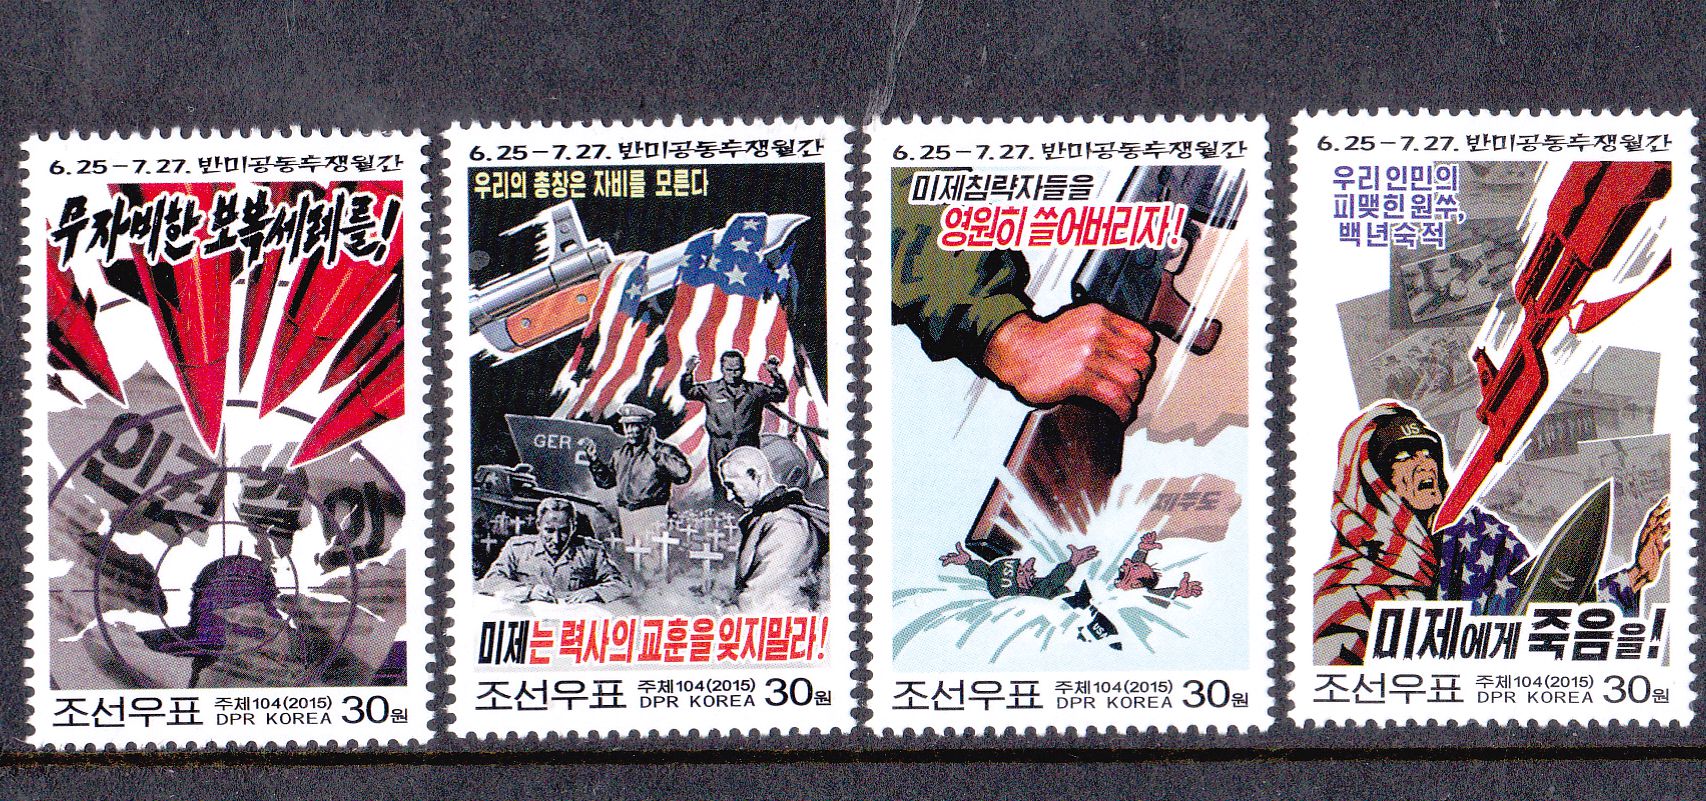 L4363, Korea Anti-USA Joint Struggle, 4 Pcs Stamps, 2015